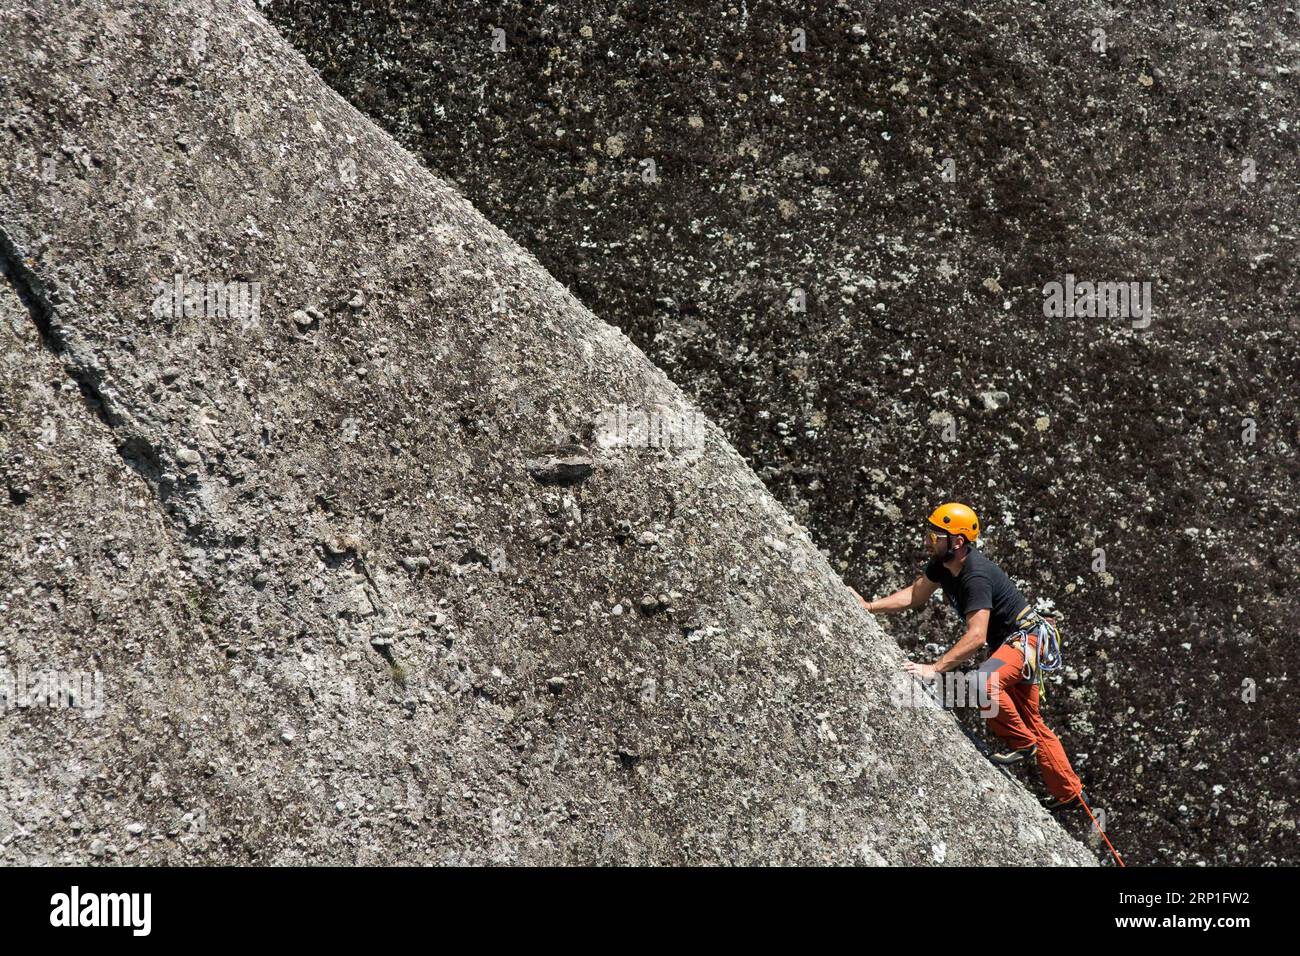 (180704) -- METEORA, 4 luglio 2018 -- l'alpinista professionista greco Vassilis Theodorou partecipa all'arrampicata nella zona di Meteora nella Tessaglia nordoccidentale, Grecia, il 3 luglio 2018. Le rocce di Meteora sono costituite da un conglomerato che viene modellato dal vento e dall'acqua nel corso di milioni di anni. (gj) GRECIA-METEORA-ROCK CLIMBING ApostolosxDomalis PUBLICATIONxNOTxINxCHN Foto Stock